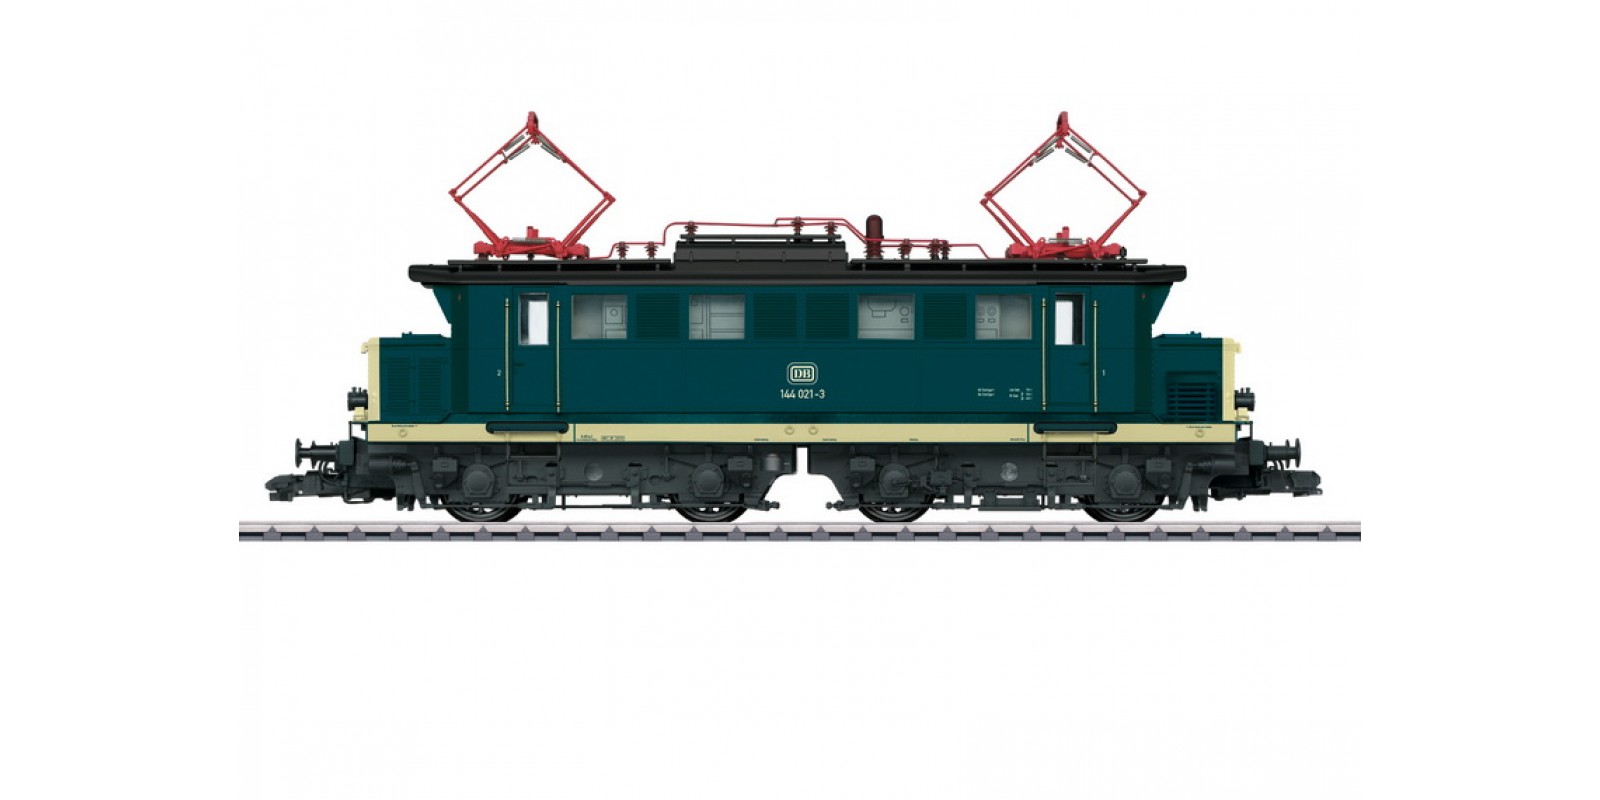 55291 Class 144 Electric Locomotive